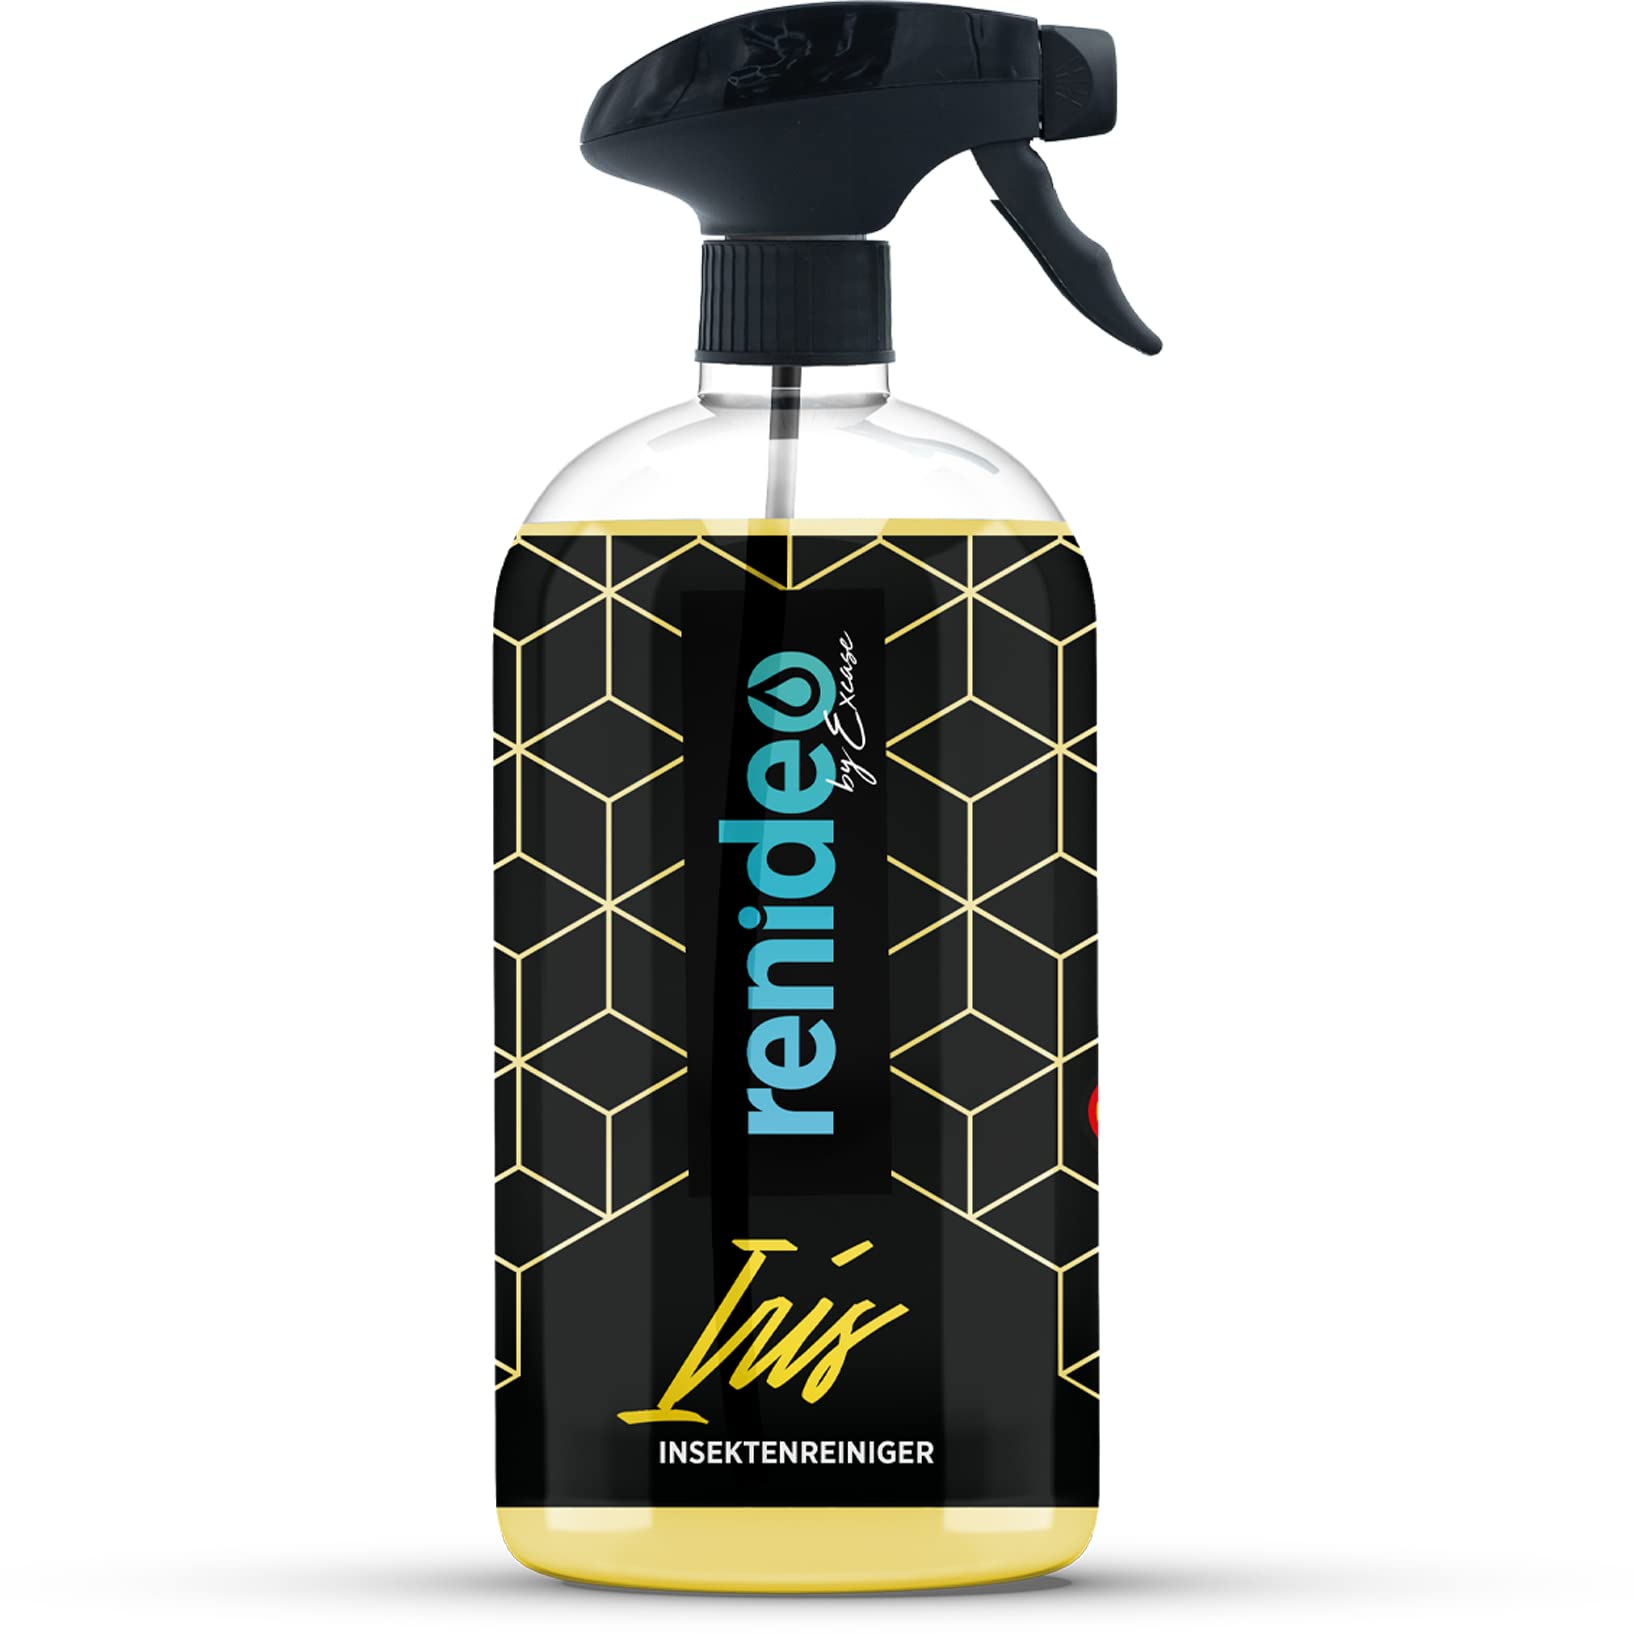 renideo Auto Insektenreiniger Spray - Iris - Insektenentferner für Windschutzscheibe, Scheinwerfer und Lack, Flugrostentferner, lackverträglich, Made in Germany (500ml) von renideo